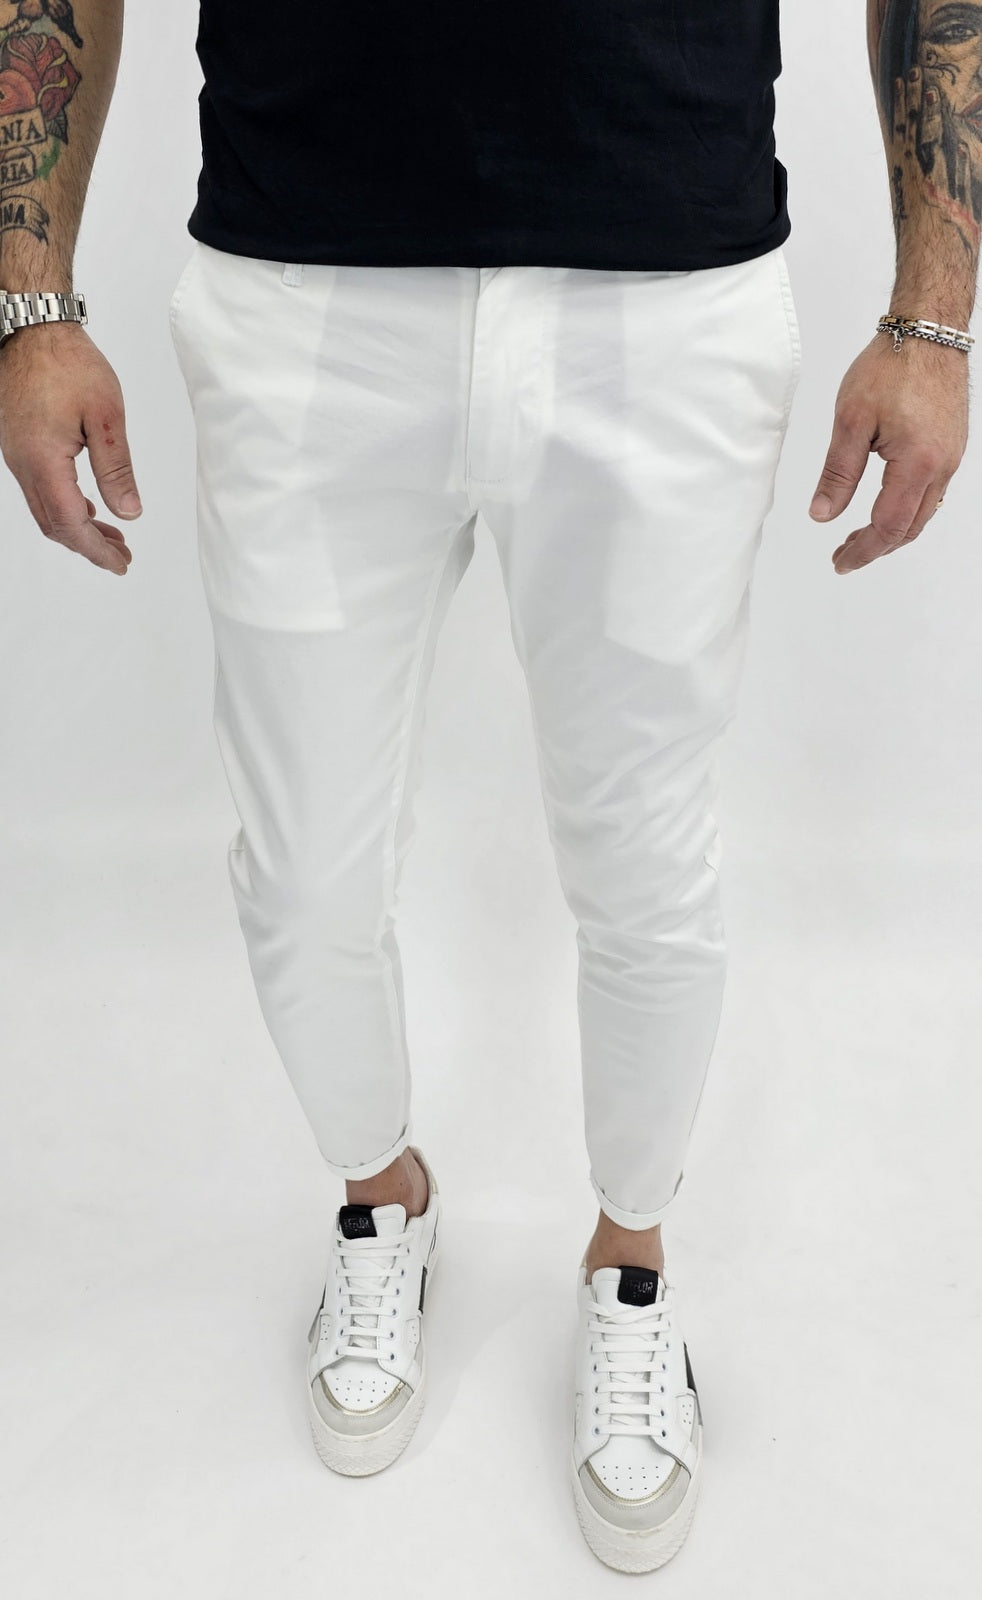 Pantalone Capri cotone  Elastico Tasche America 4 colori Sabbia Nero Blu bianco